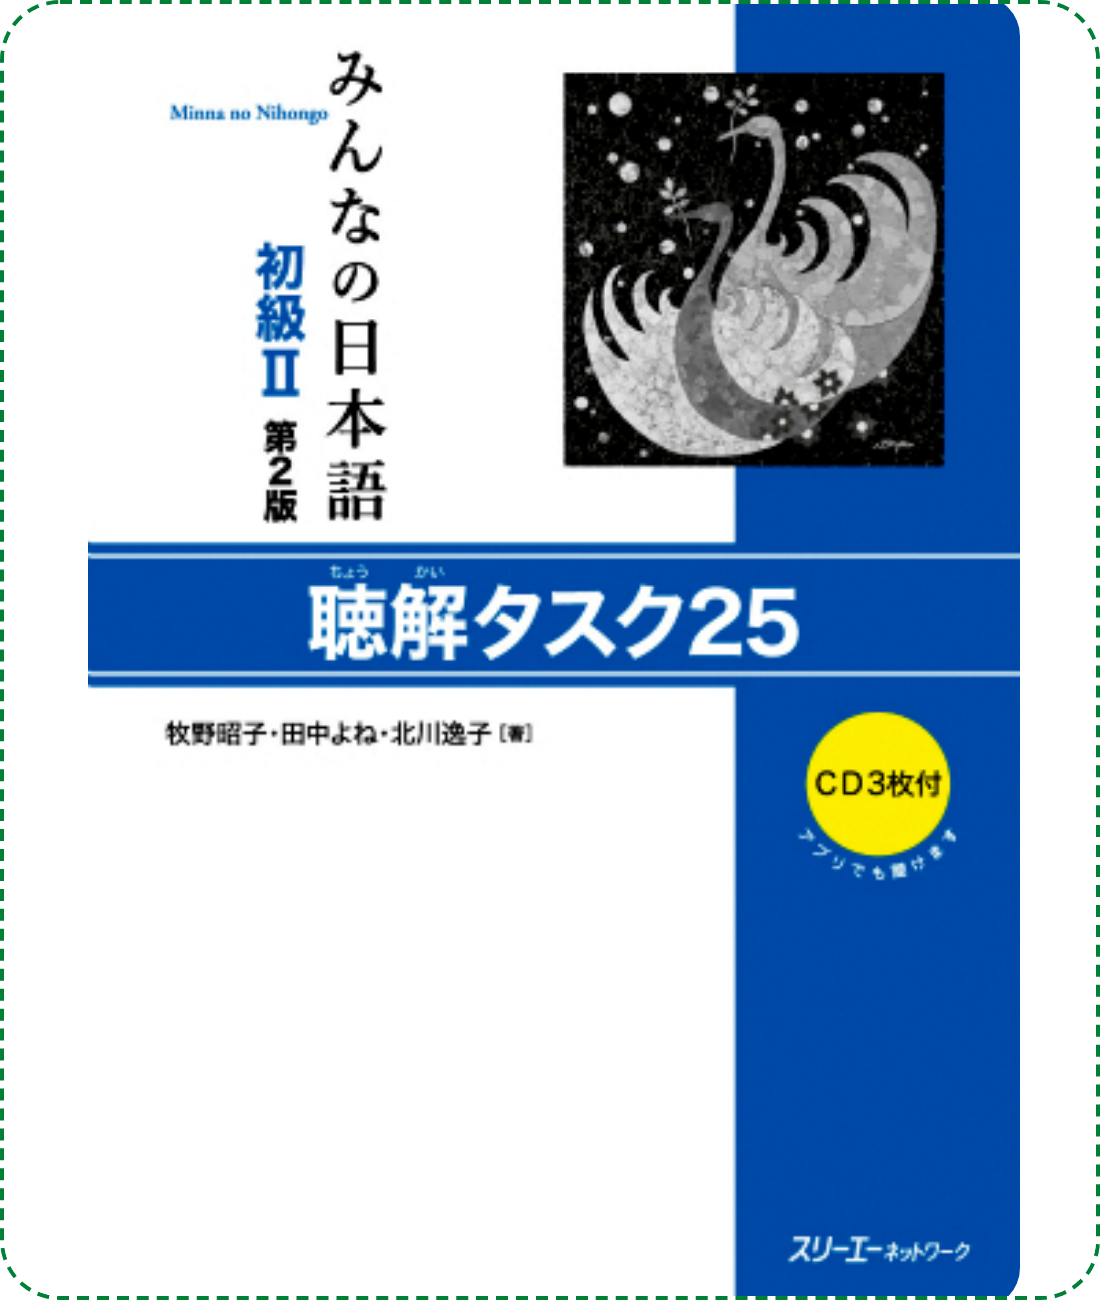 Giáo trình Minano Nihongo 2 - Quyển Luyện Nghe Choukai Tasuku 25